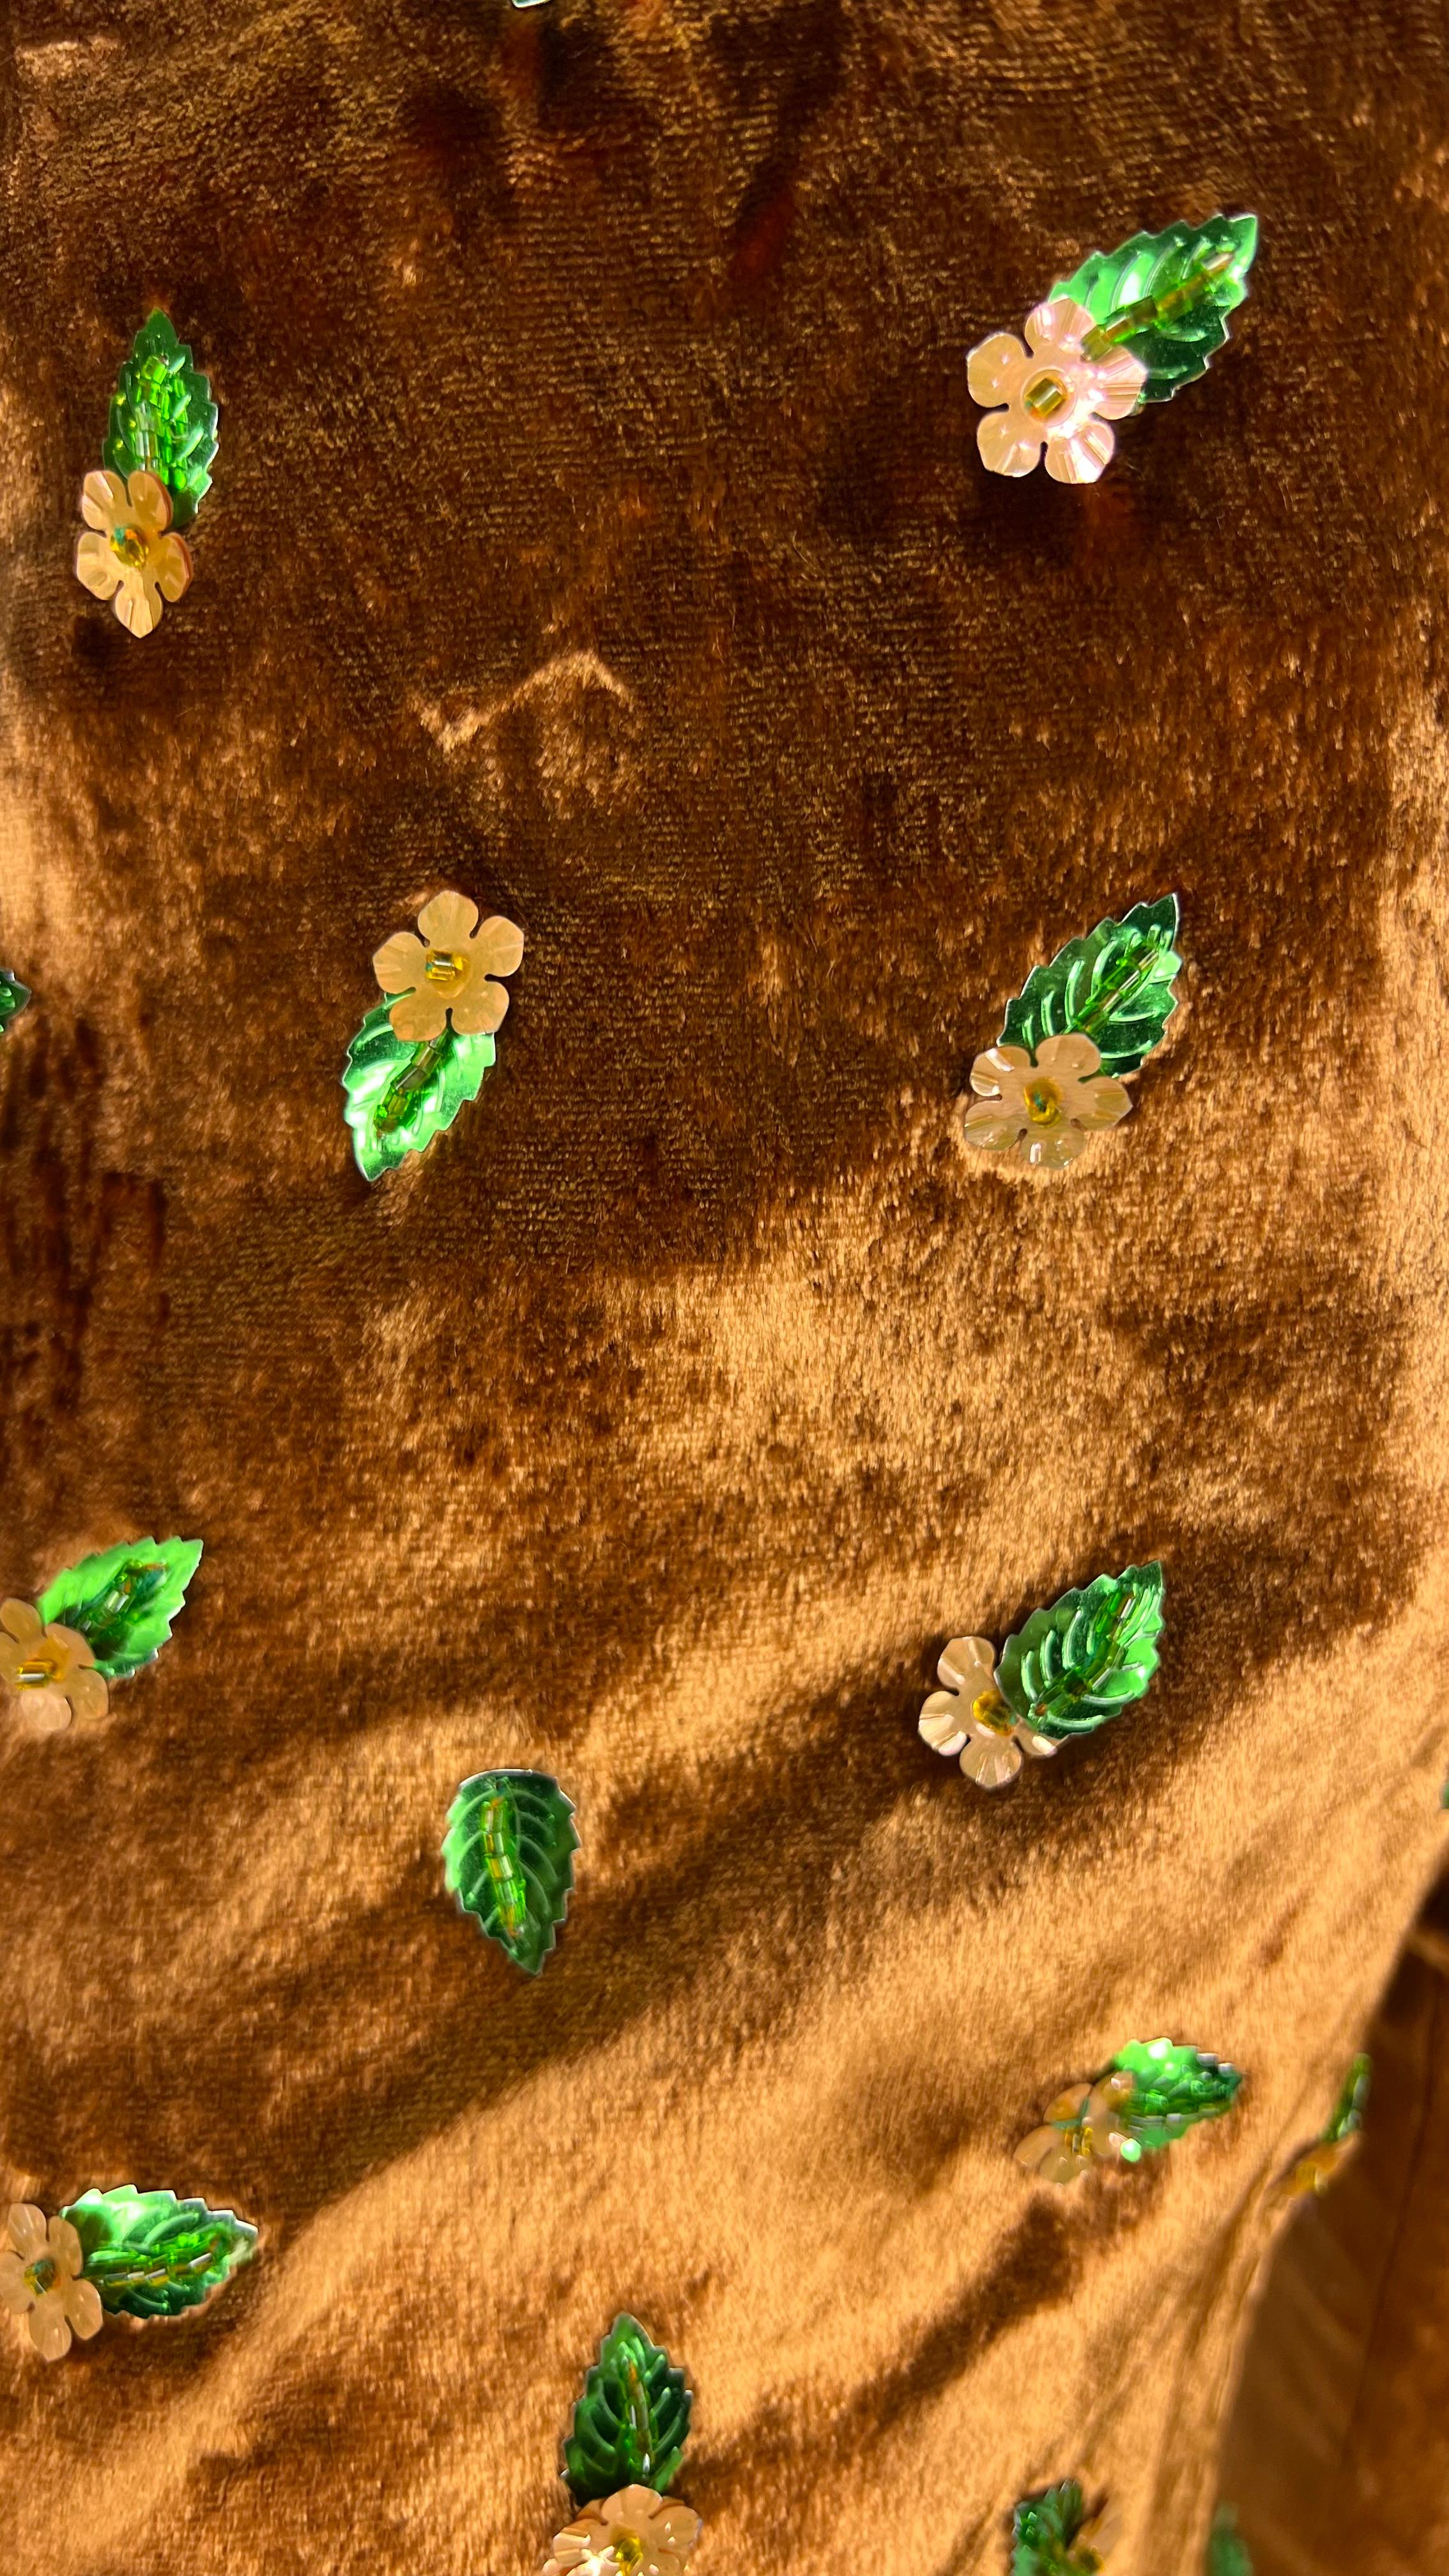 Ich präsentiere eine Hose von Dolce und Gabbana aus kupferfarbenem Samt mit Stickereien. Diese Schlaghose aus den 1990er Jahren ist aus üppigem Kupfersamt gefertigt und mit floralen Perlendetails verziert. 

Ungefähre Maße:
Größe - entfernt
Taille: